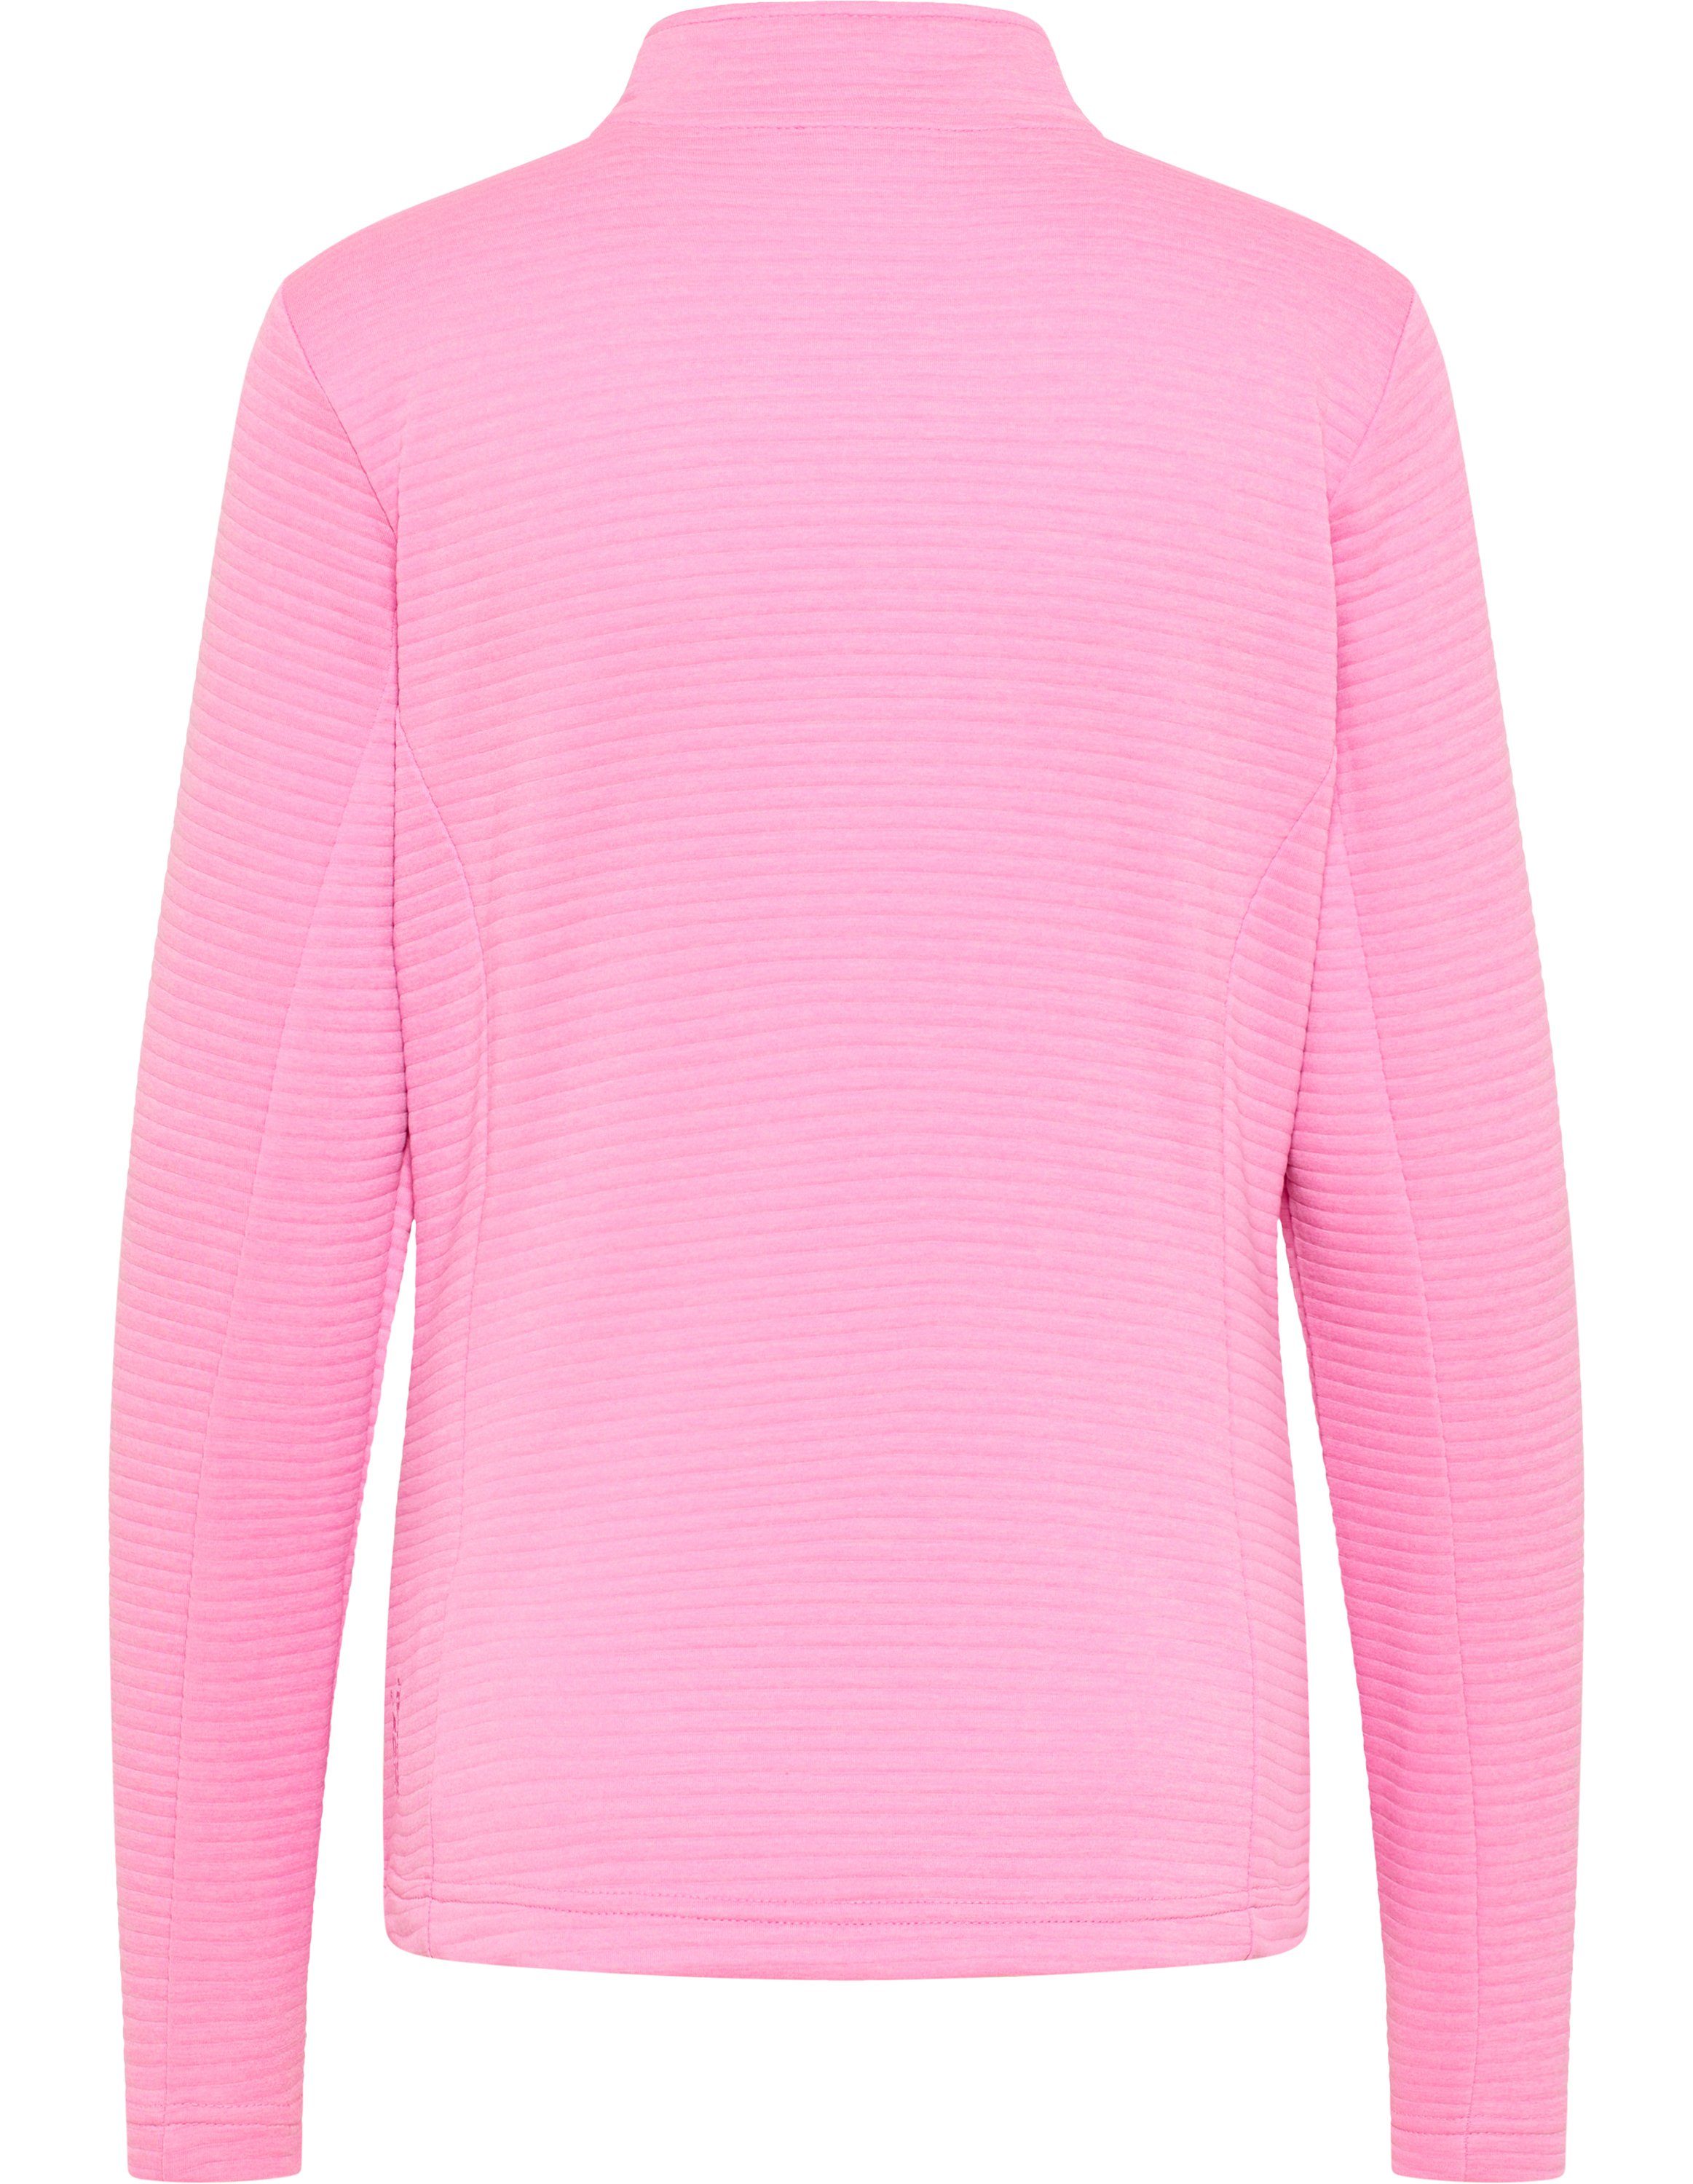 Trainingsjacke pink Sportswear PEGGY cyclam melange Joy Jacke